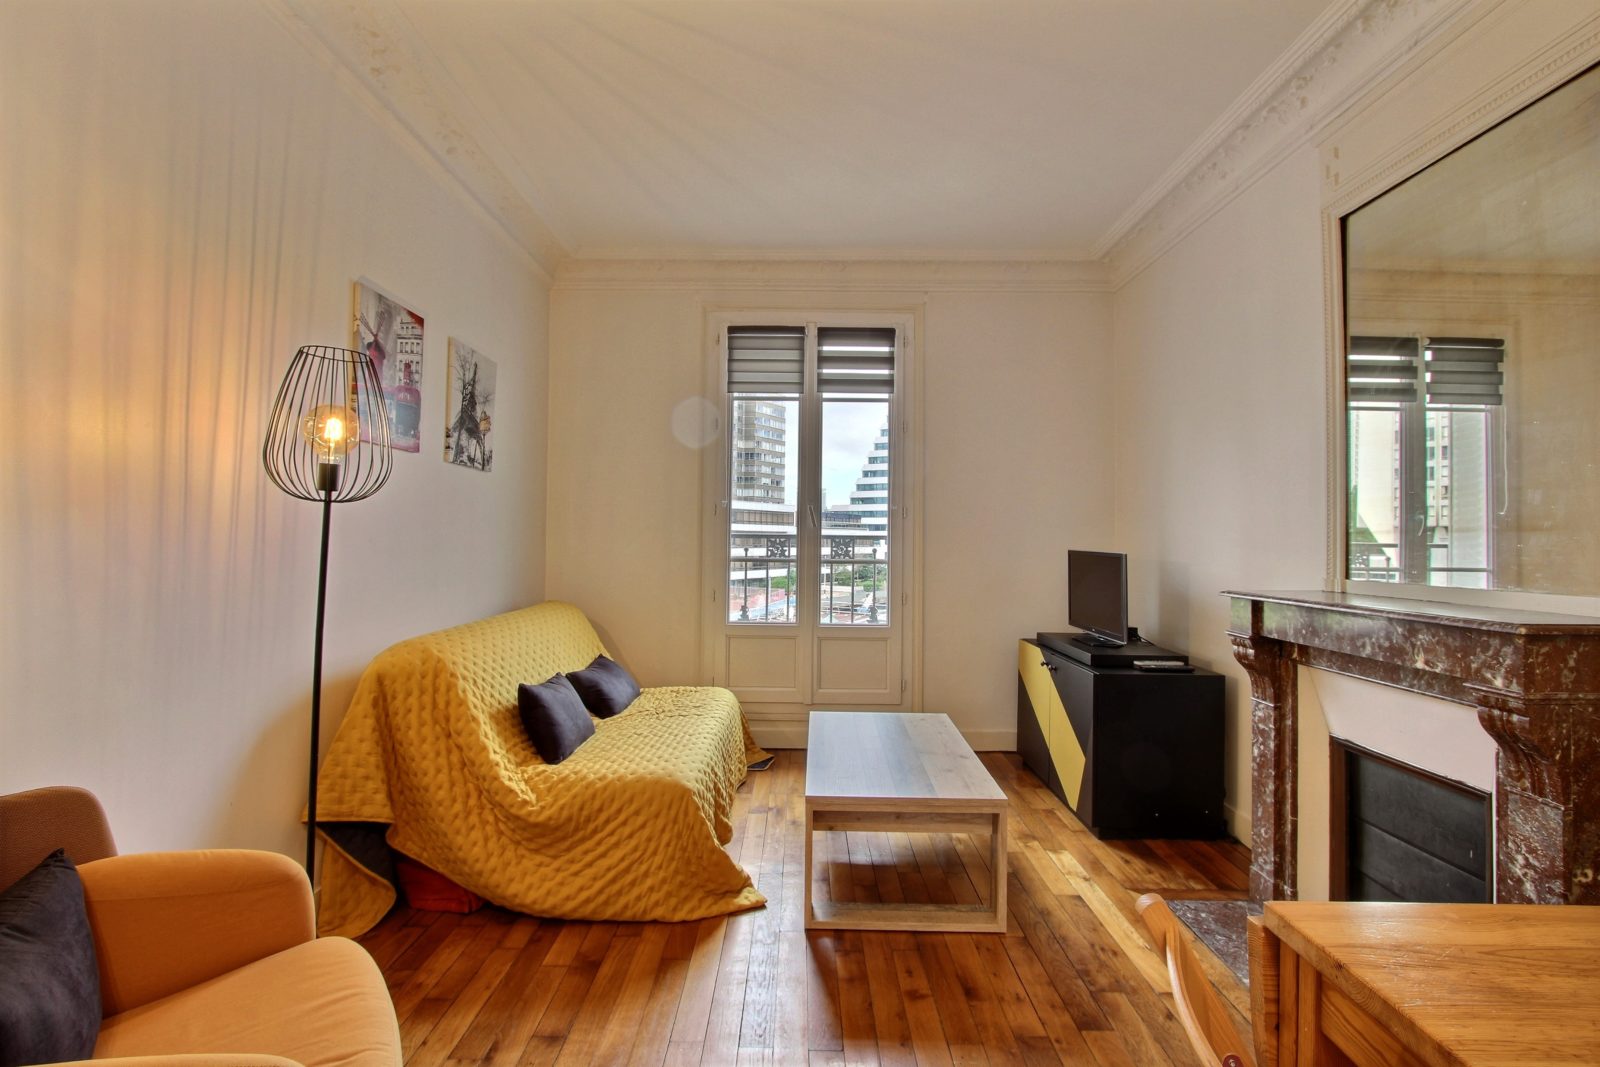 1 bedroom apartment rental in Paris, Rue Sextius Michel